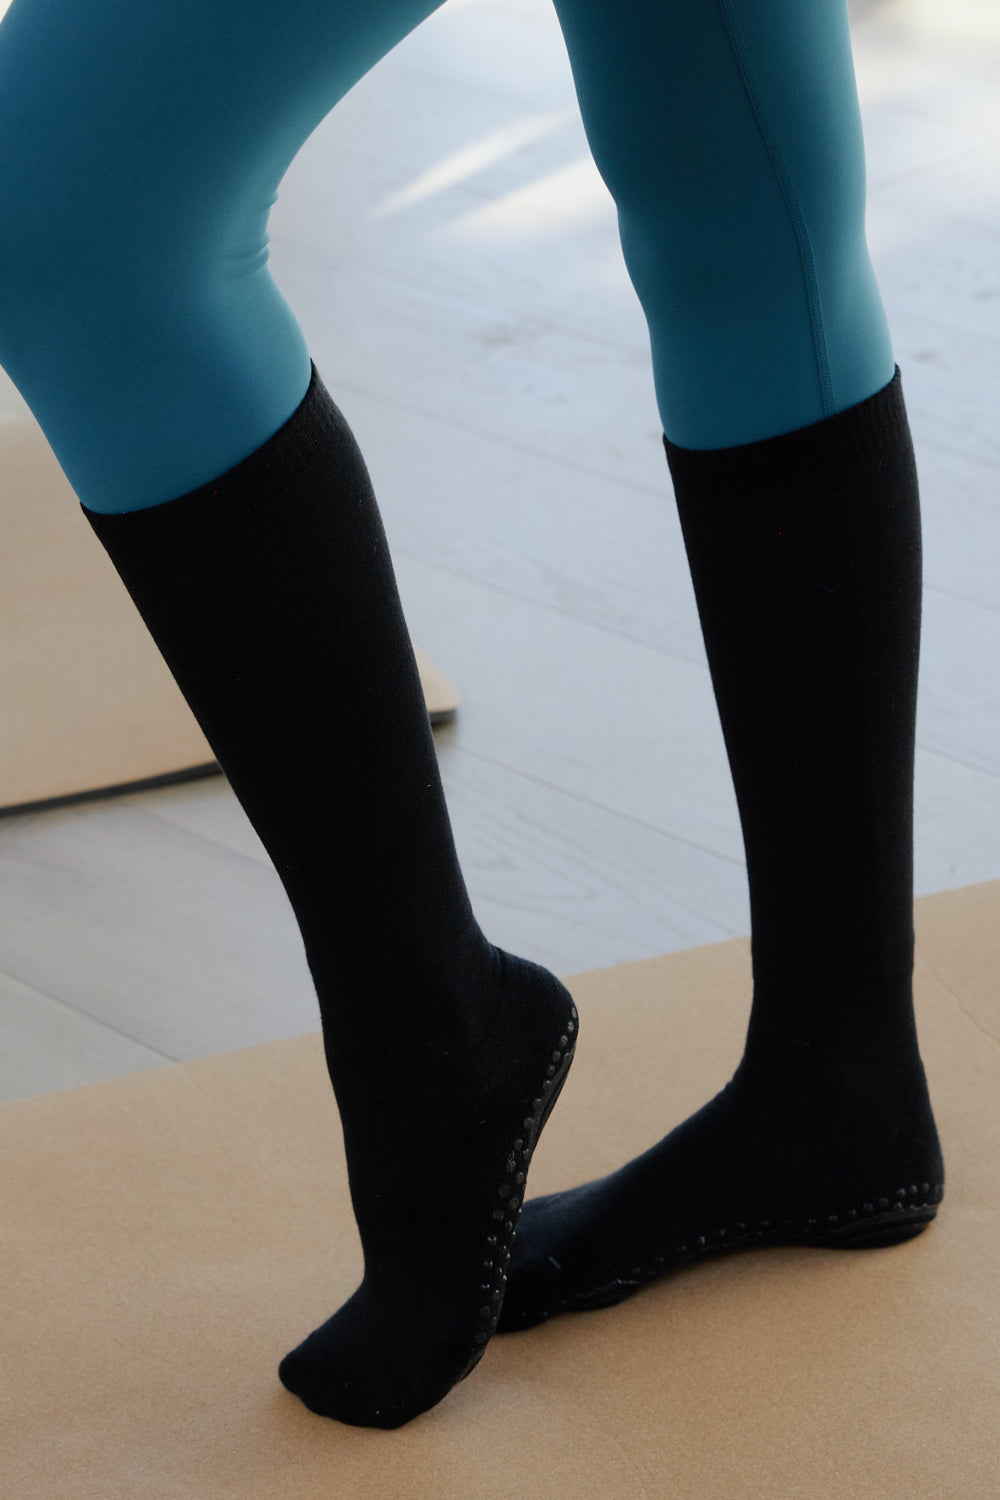 Nonslip Performance Over The Calf Socks